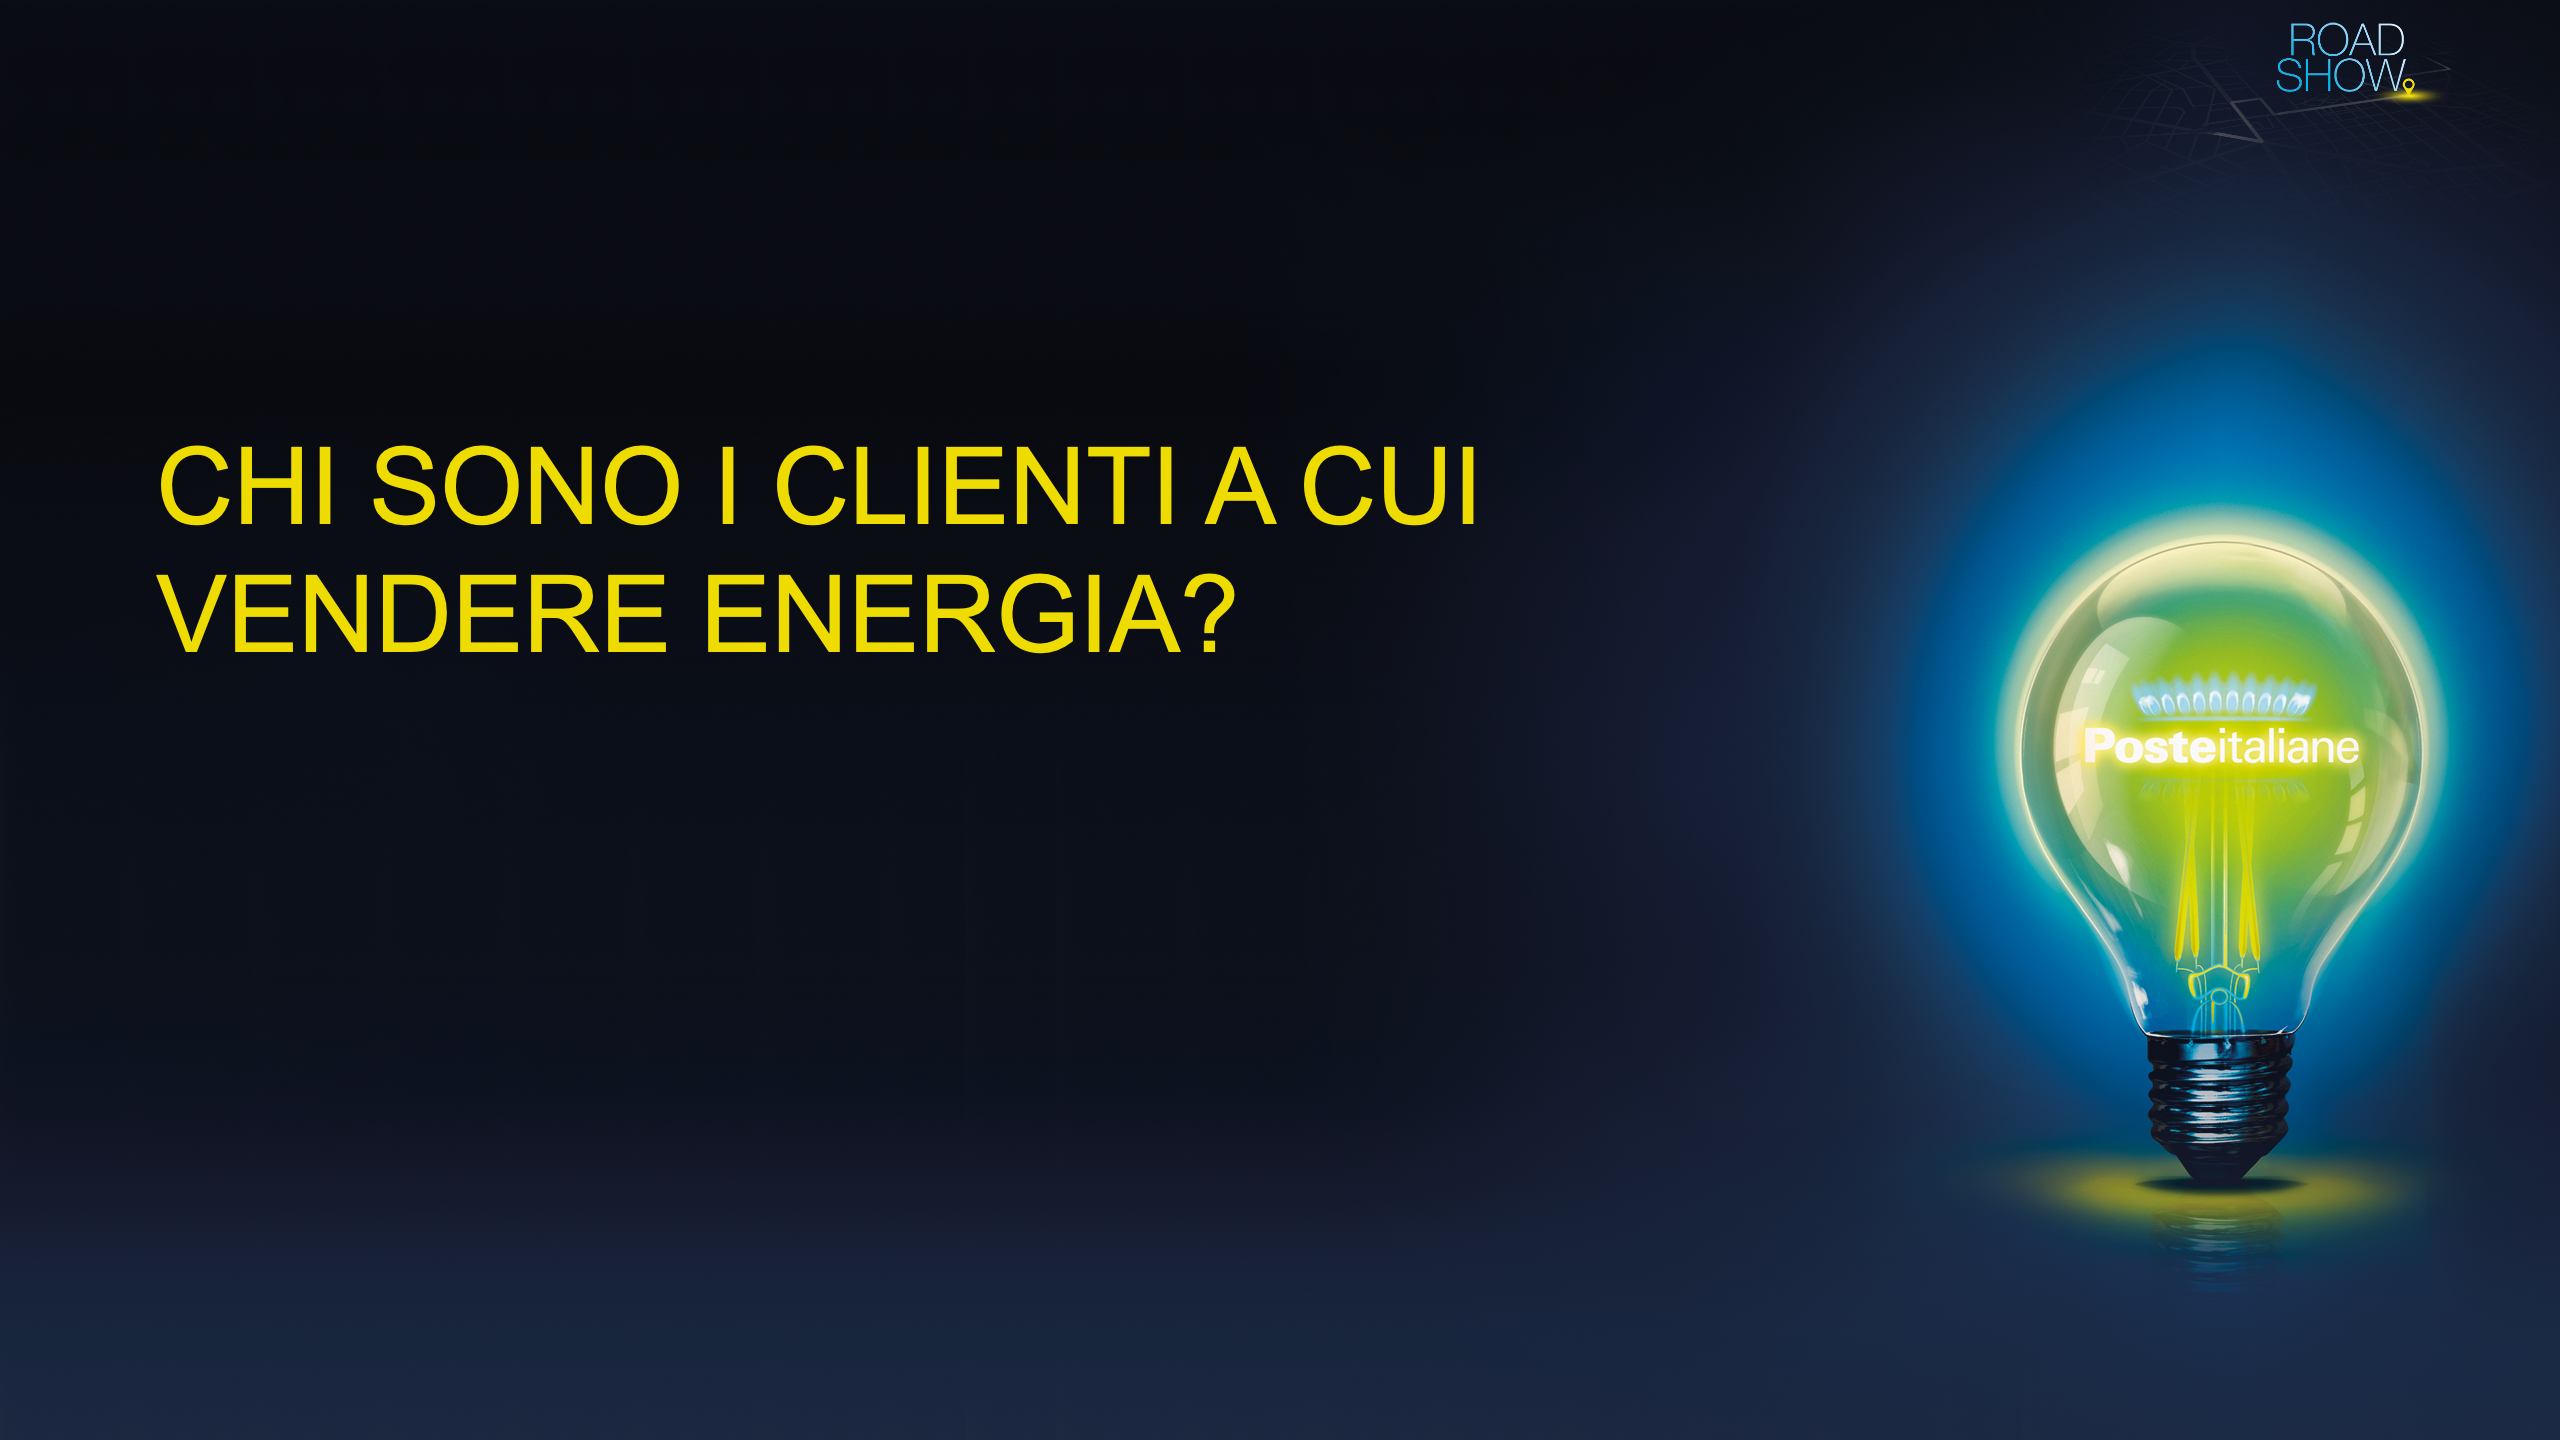 Poste Italiane roadshow presentazione prodotto Energia